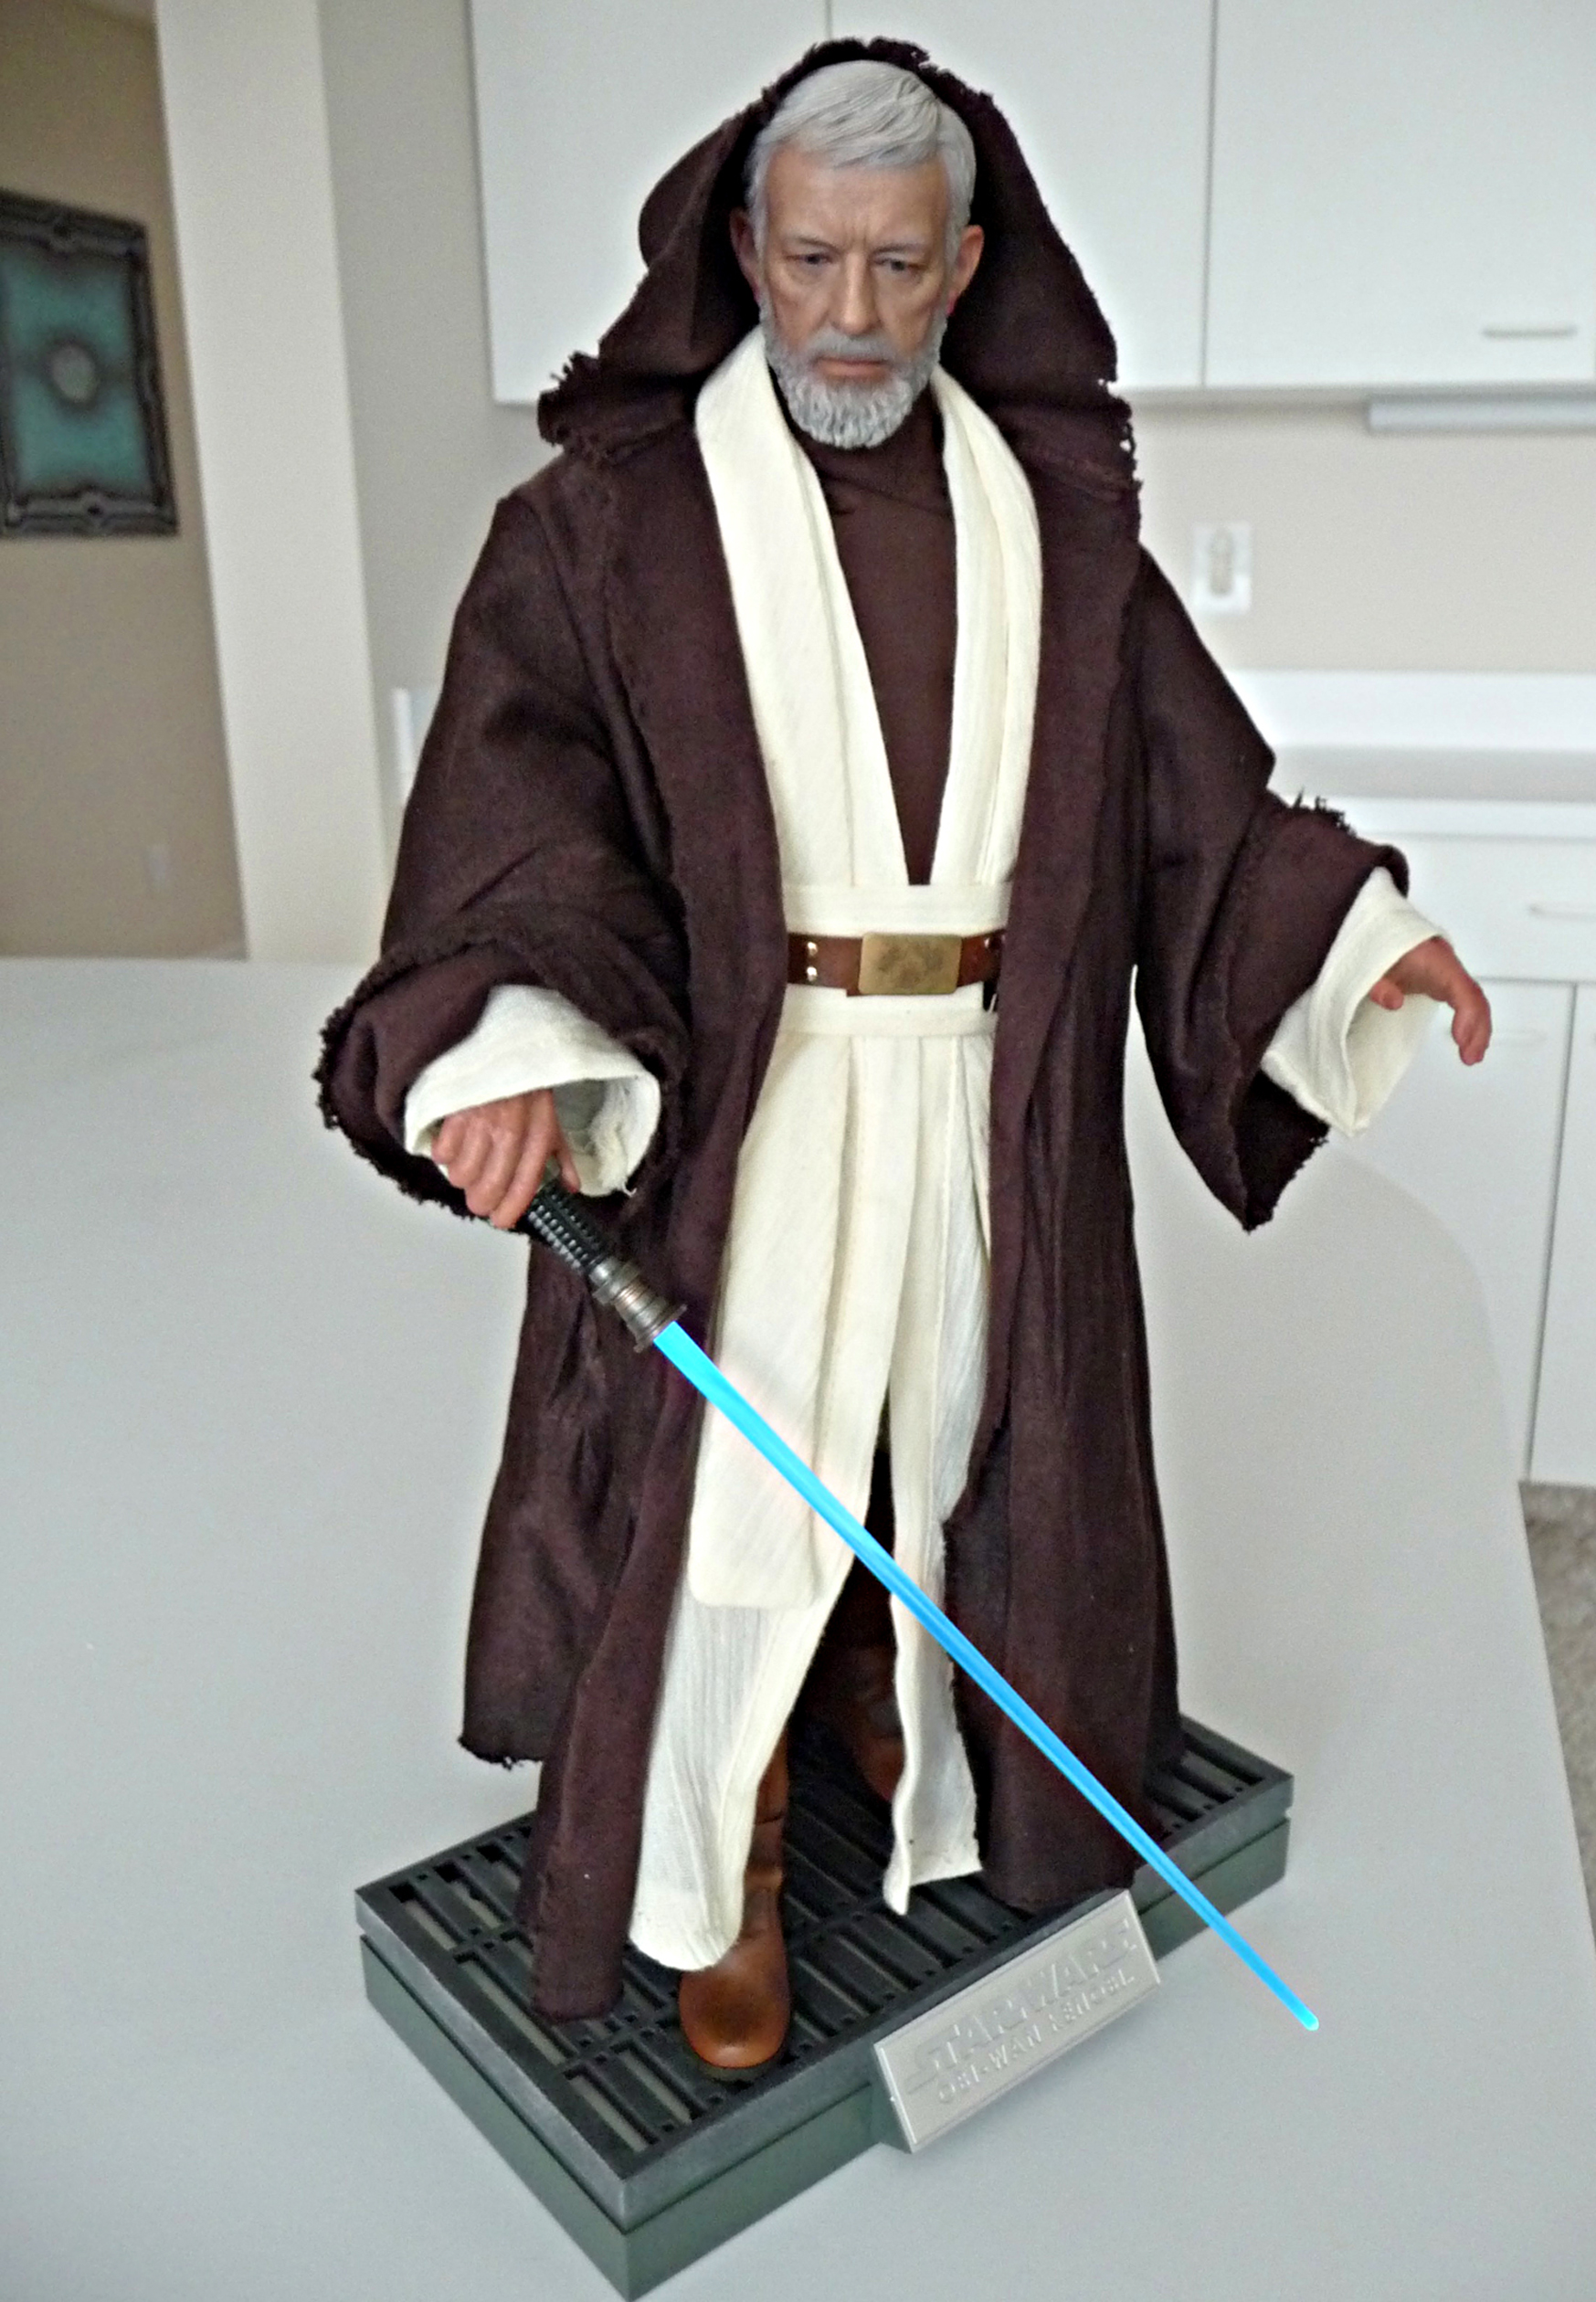 Obi-Wan.jpg